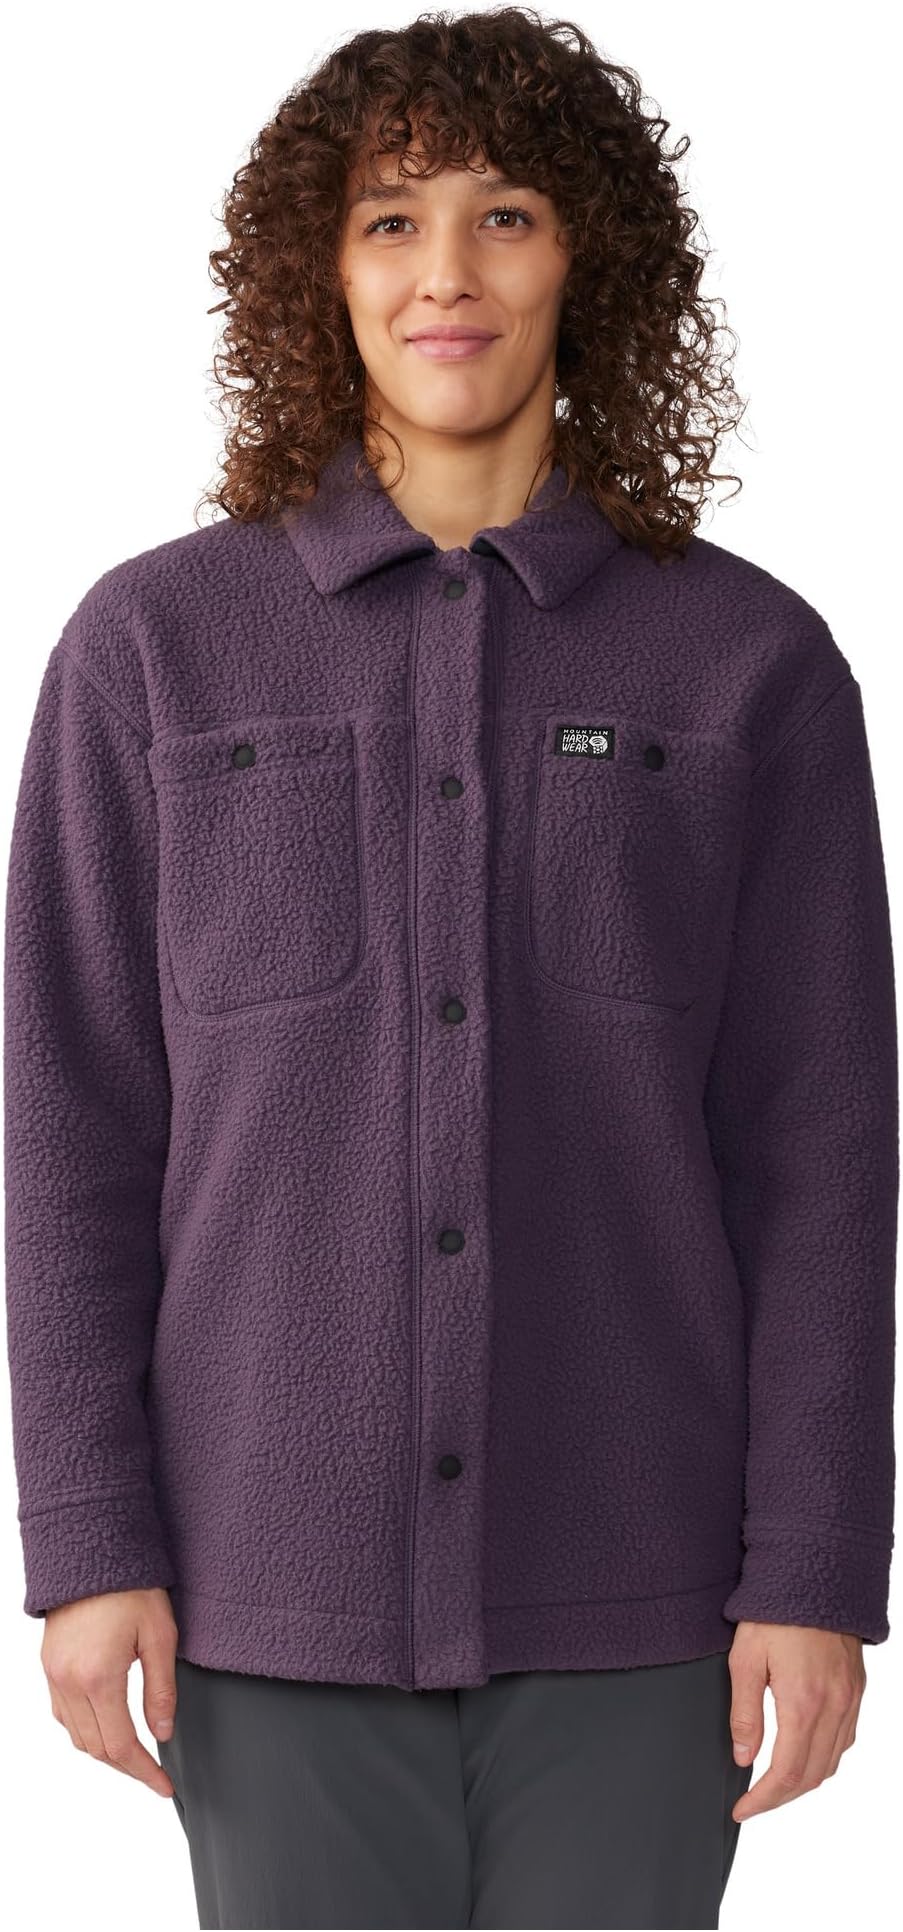 Светлая рубашка HiCamp Mountain Hardwear, цвет Blurple шапочка для заправки mountain hardwear цвет blurple zig zag